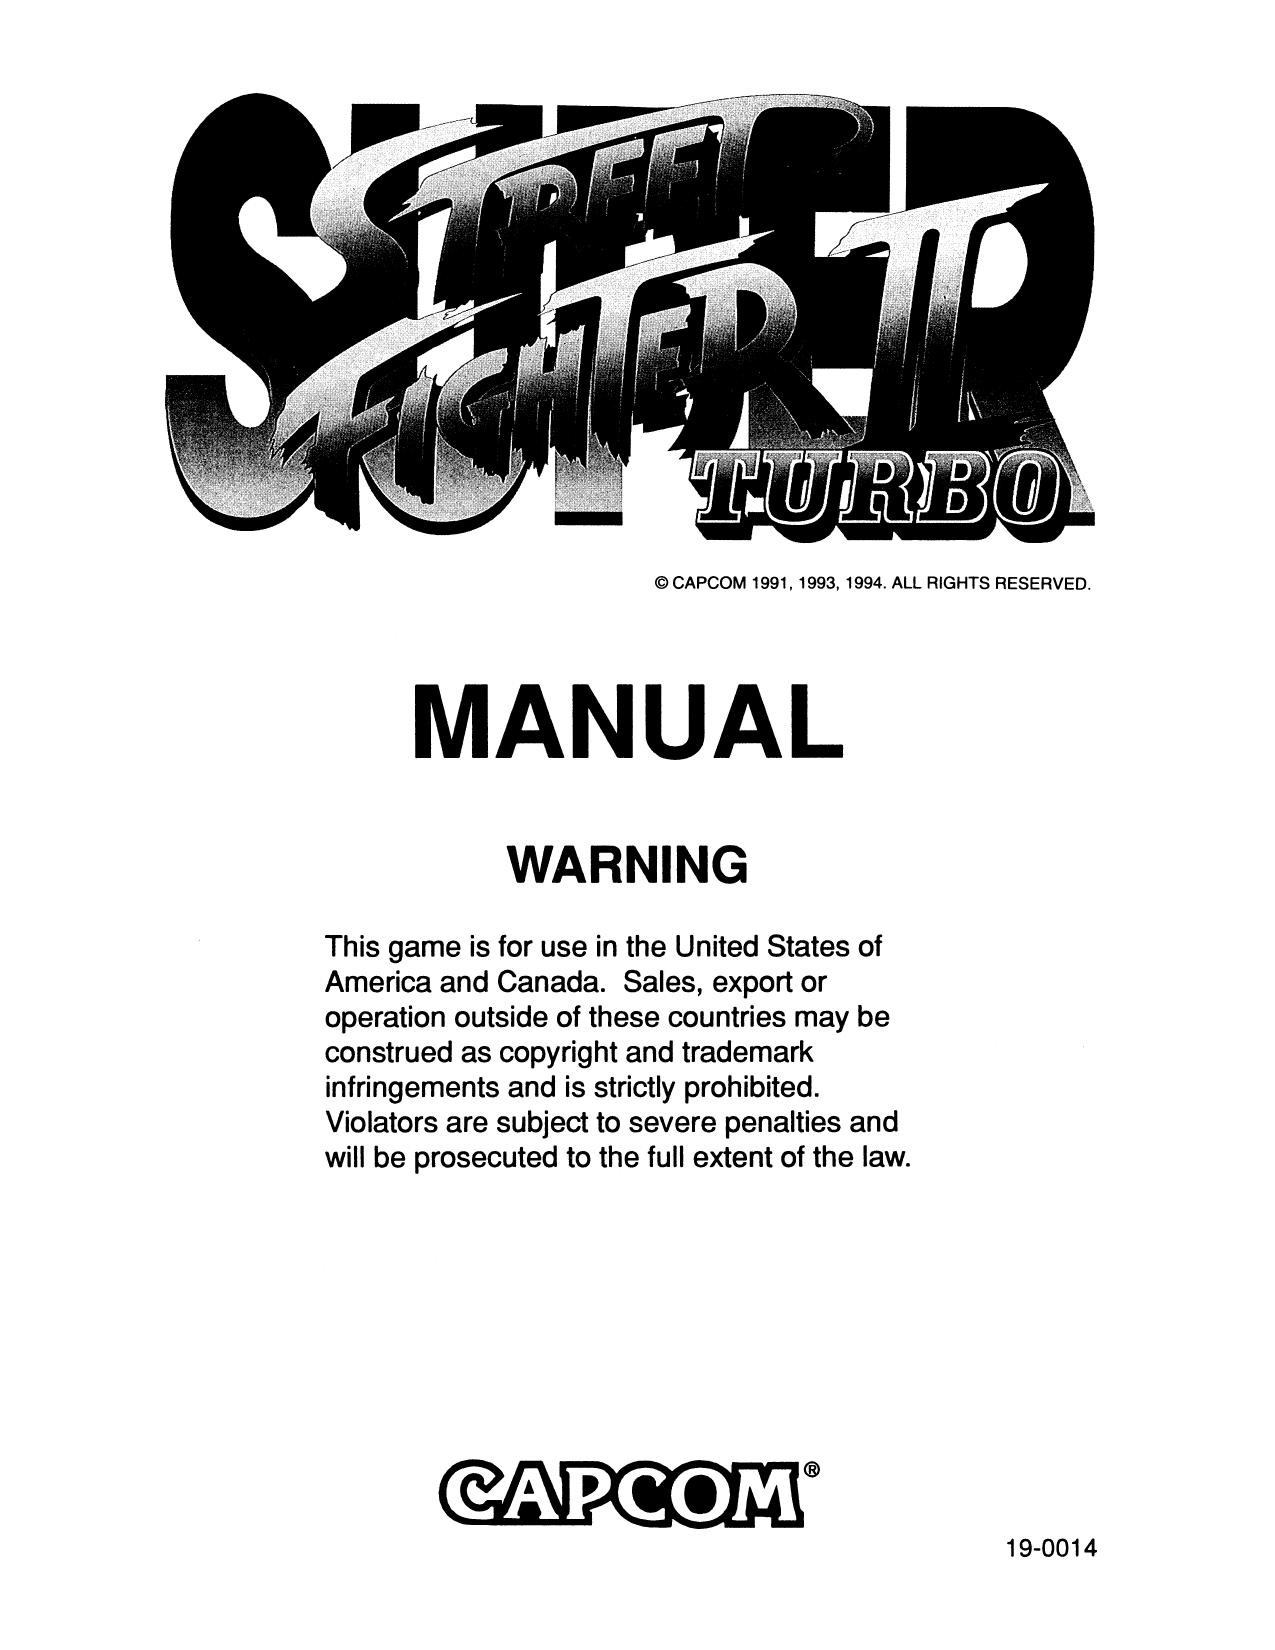 SuperSFIITurbo Manual